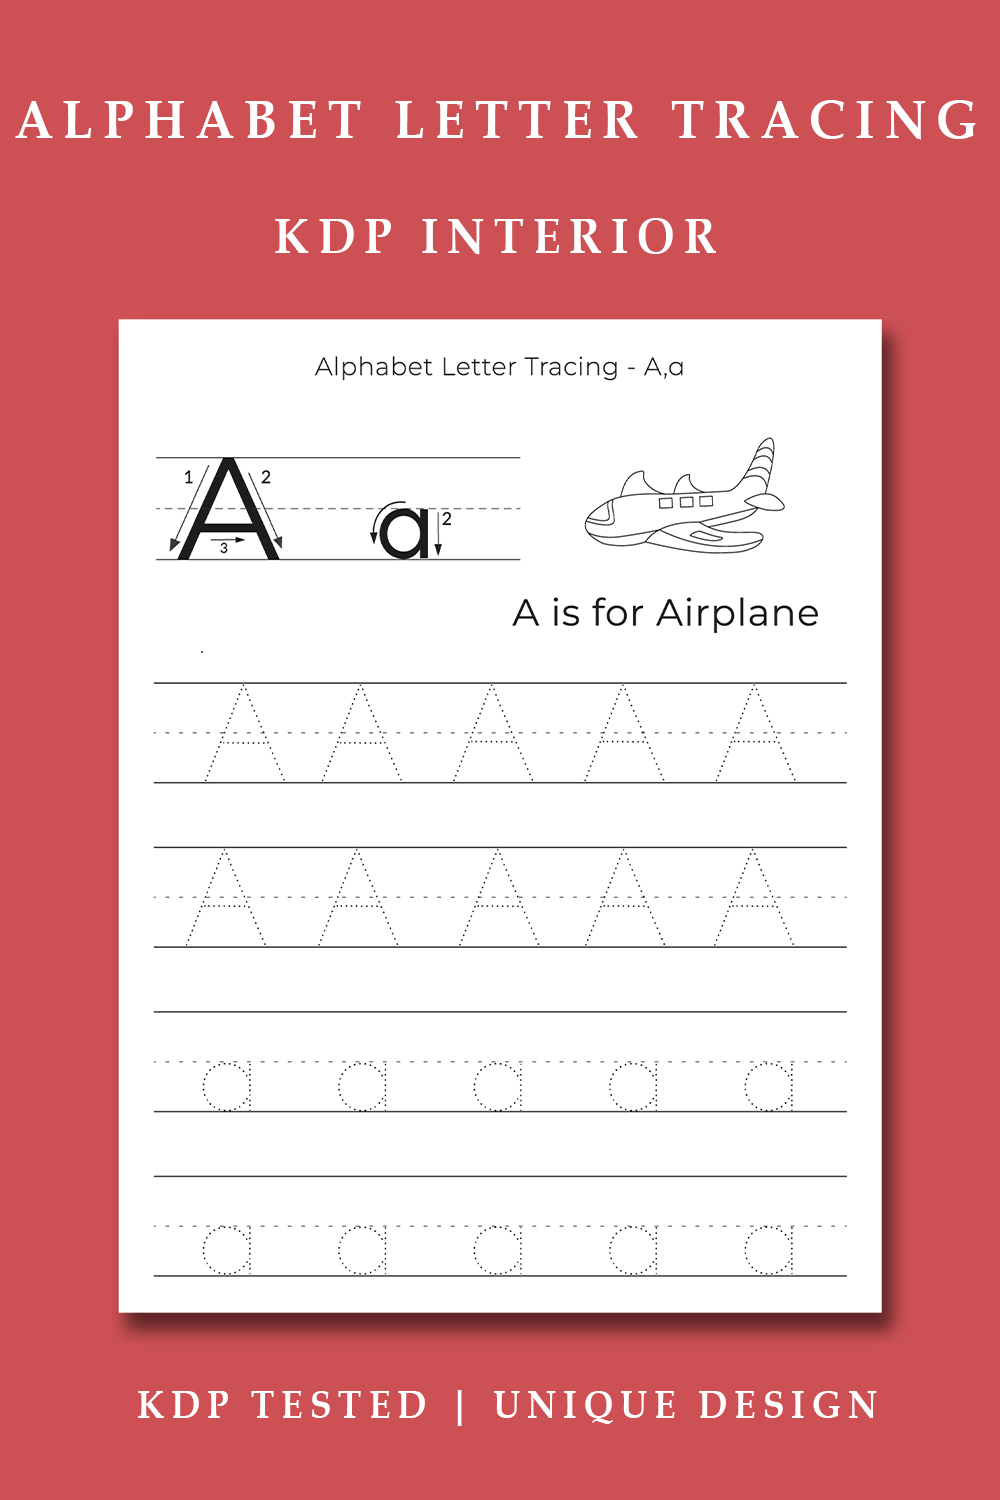 Alphabet Letter Tracing Worksheet For Kids KDP Interior pinterest image.